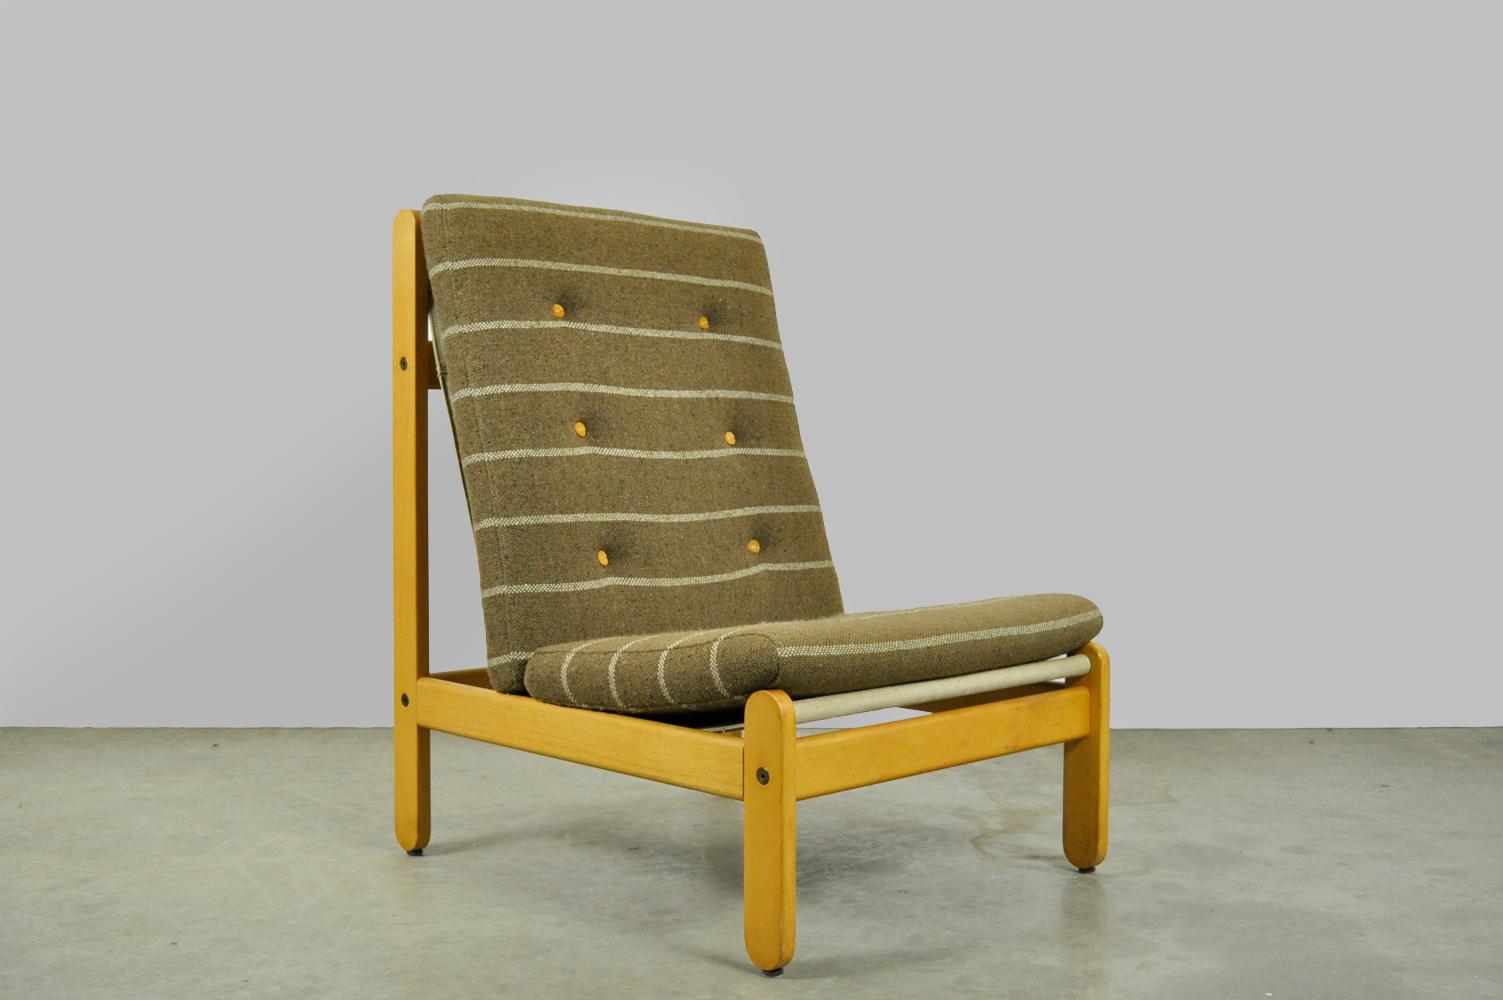 Spezieller Loungesessel aus Buchenholz, entworfen von dem Dänen Bernt Petersen und hergestellt von Schiang Furniture, 1960er Jahre. 
Der Sessel hat ein Gestell aus Buchenholz, zwischen denen eine Sitzfläche aus Segeltuch hängt. Auf der Sitzfläche